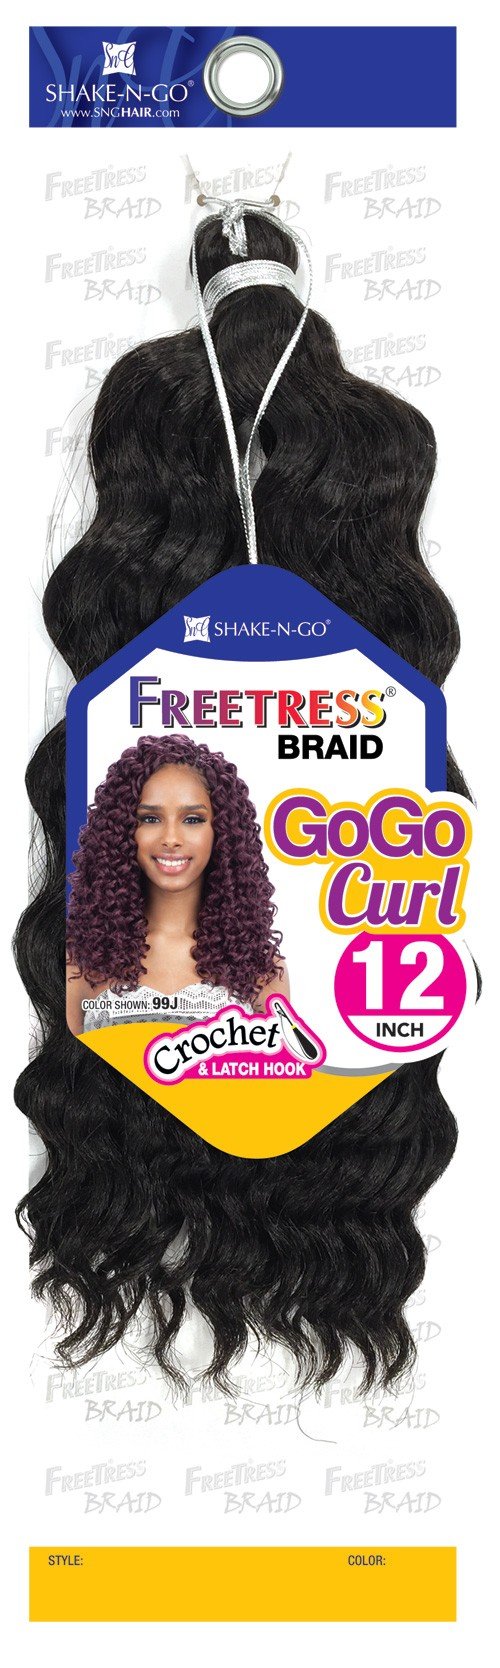 Freetress Braid Gogo Curl 12